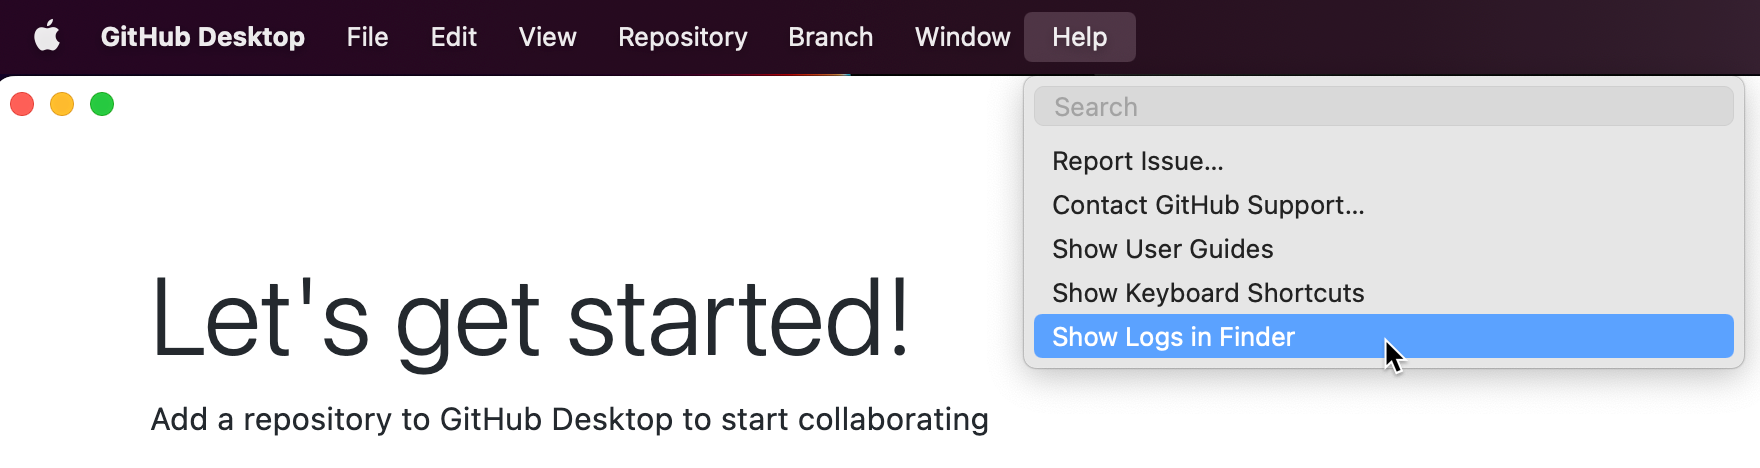 Mac의 "GitHub Desktop" 메뉴 모음 스크린샷입니다. 확장된 "도움말" 드롭다운 메뉴에서 커서가 파란색으로 강조 표시된 "Finder에 로그 표시"를 가리킵니다.